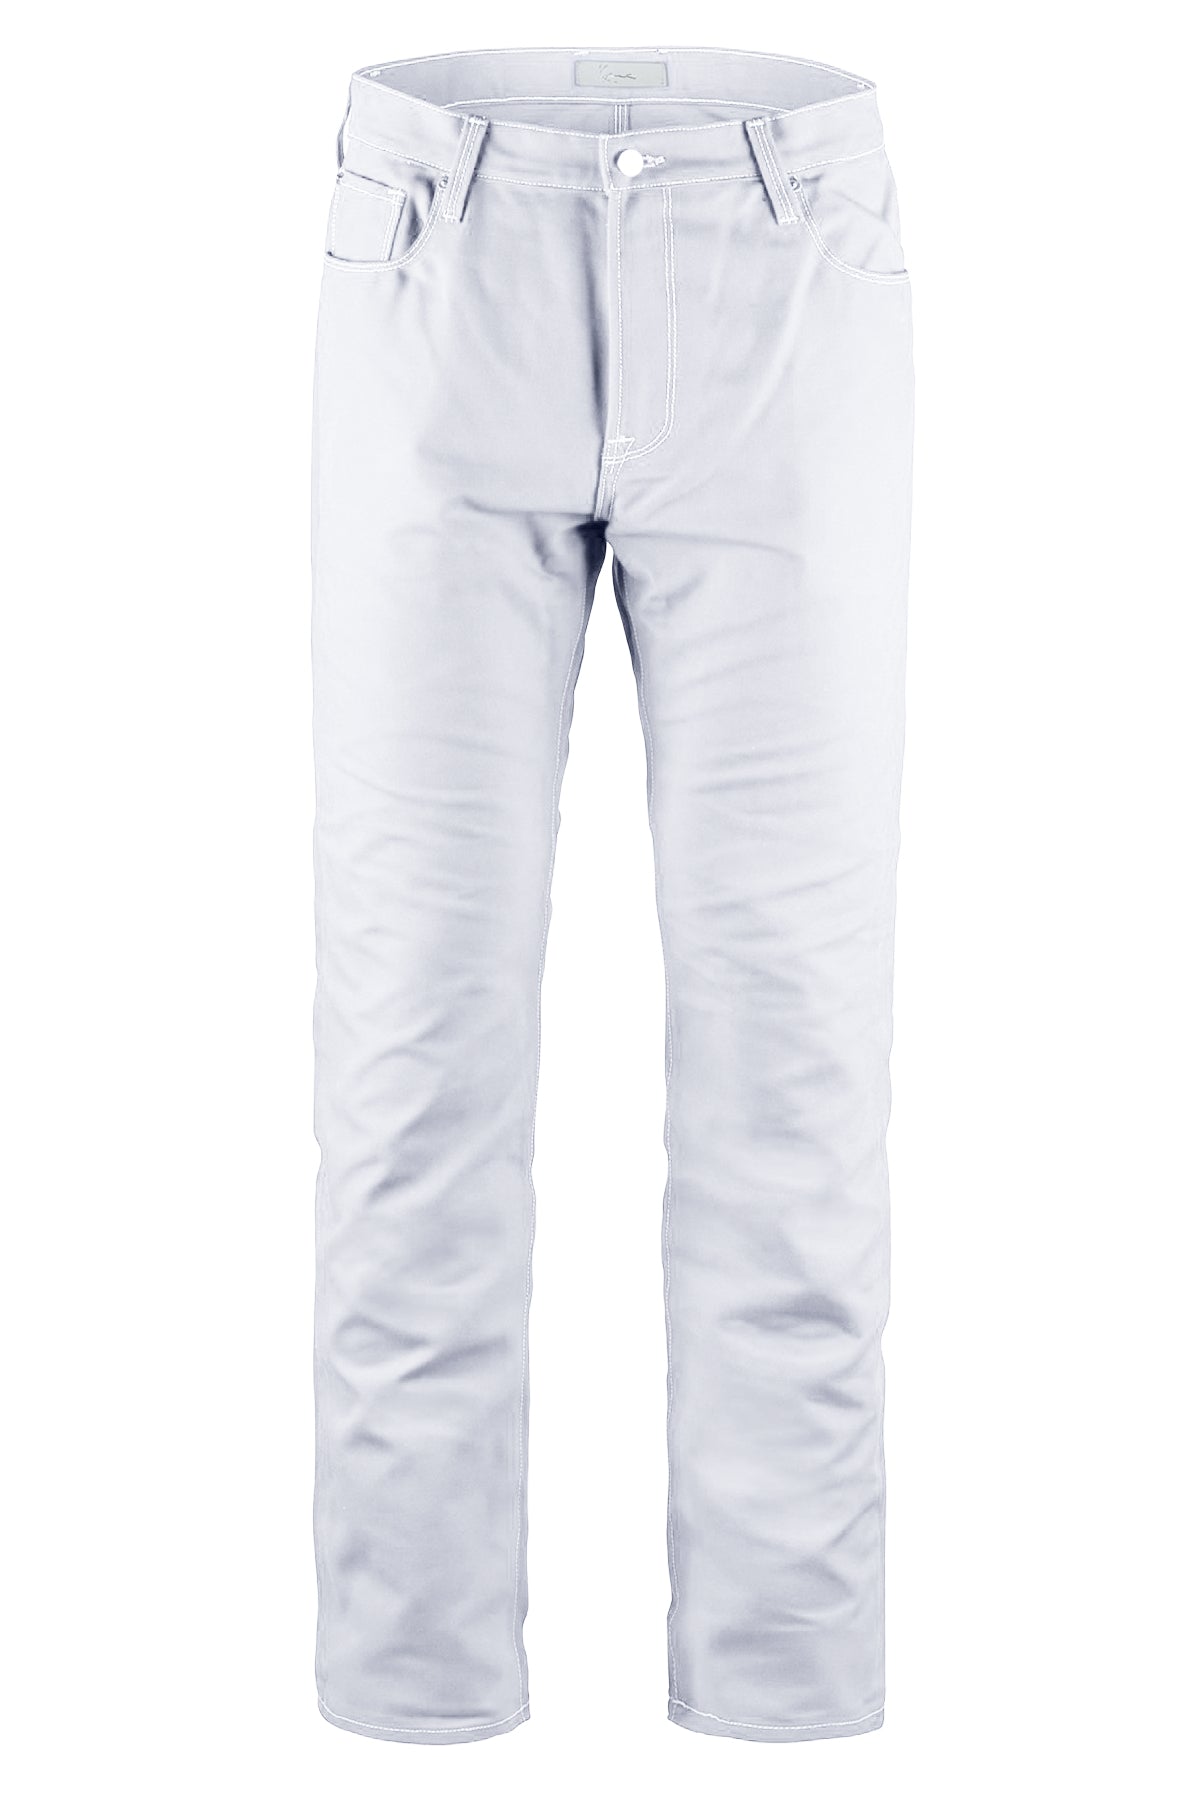 white pants jeans